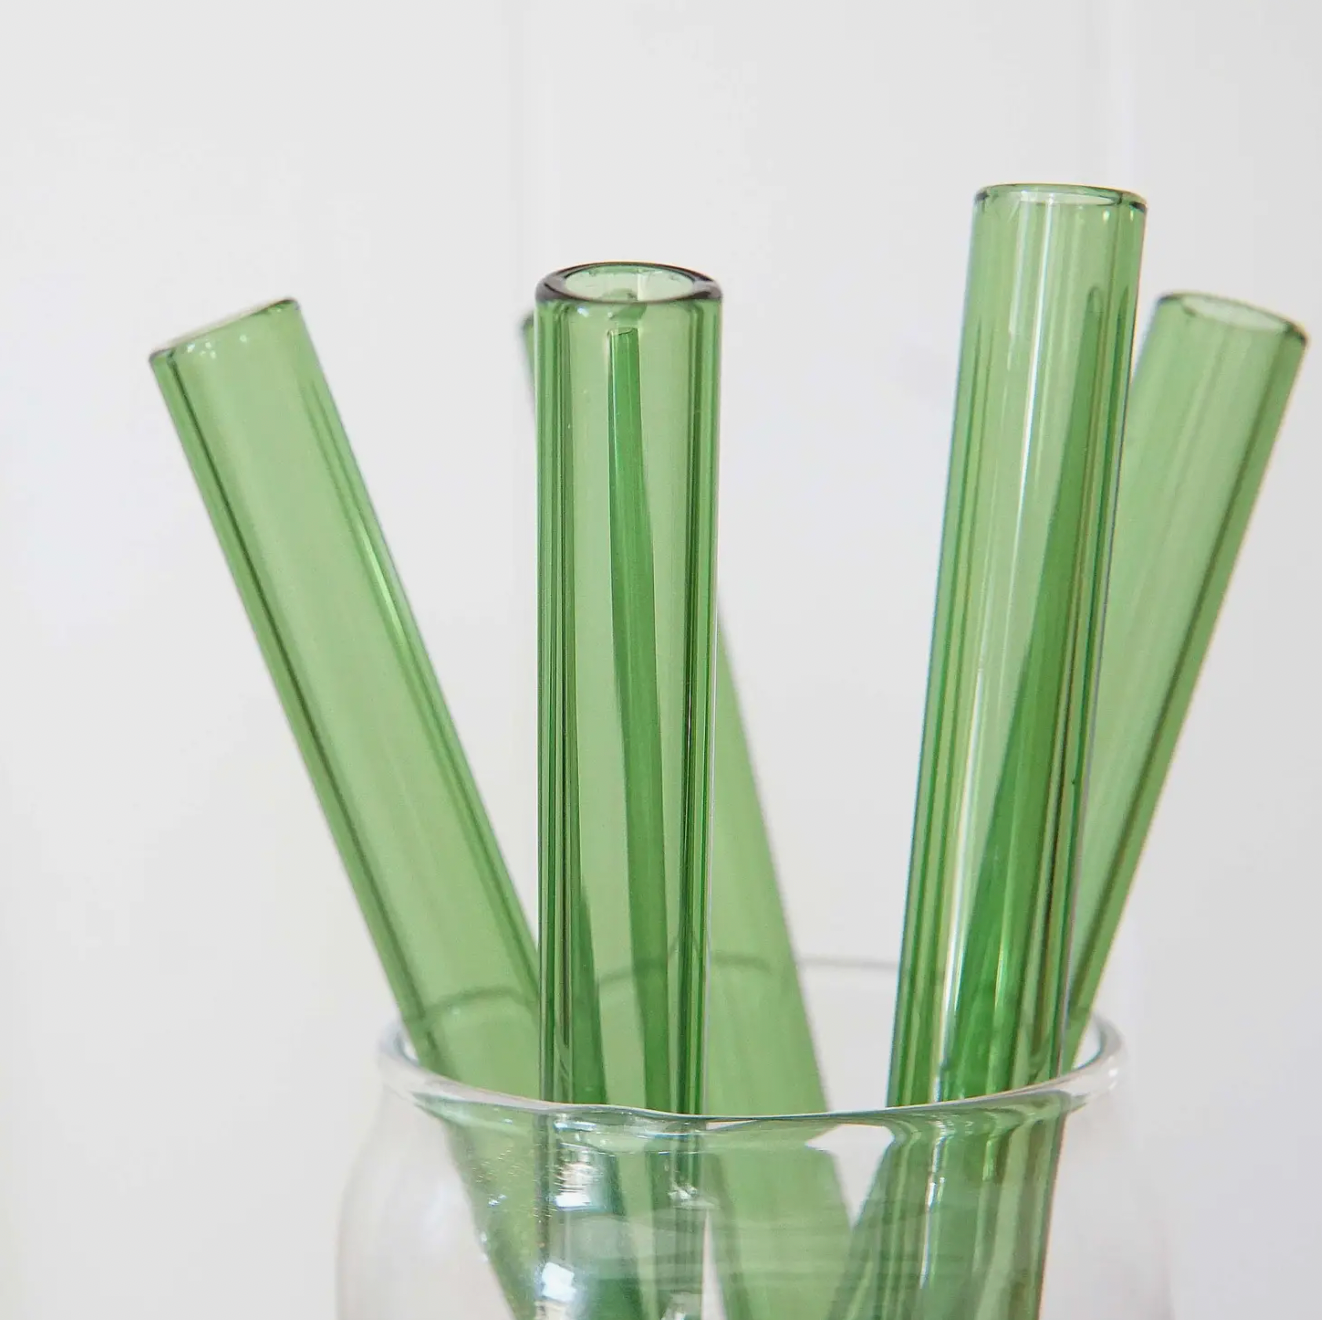 Flower GLASS STRAW - Boba Straws, Smoothie Straws